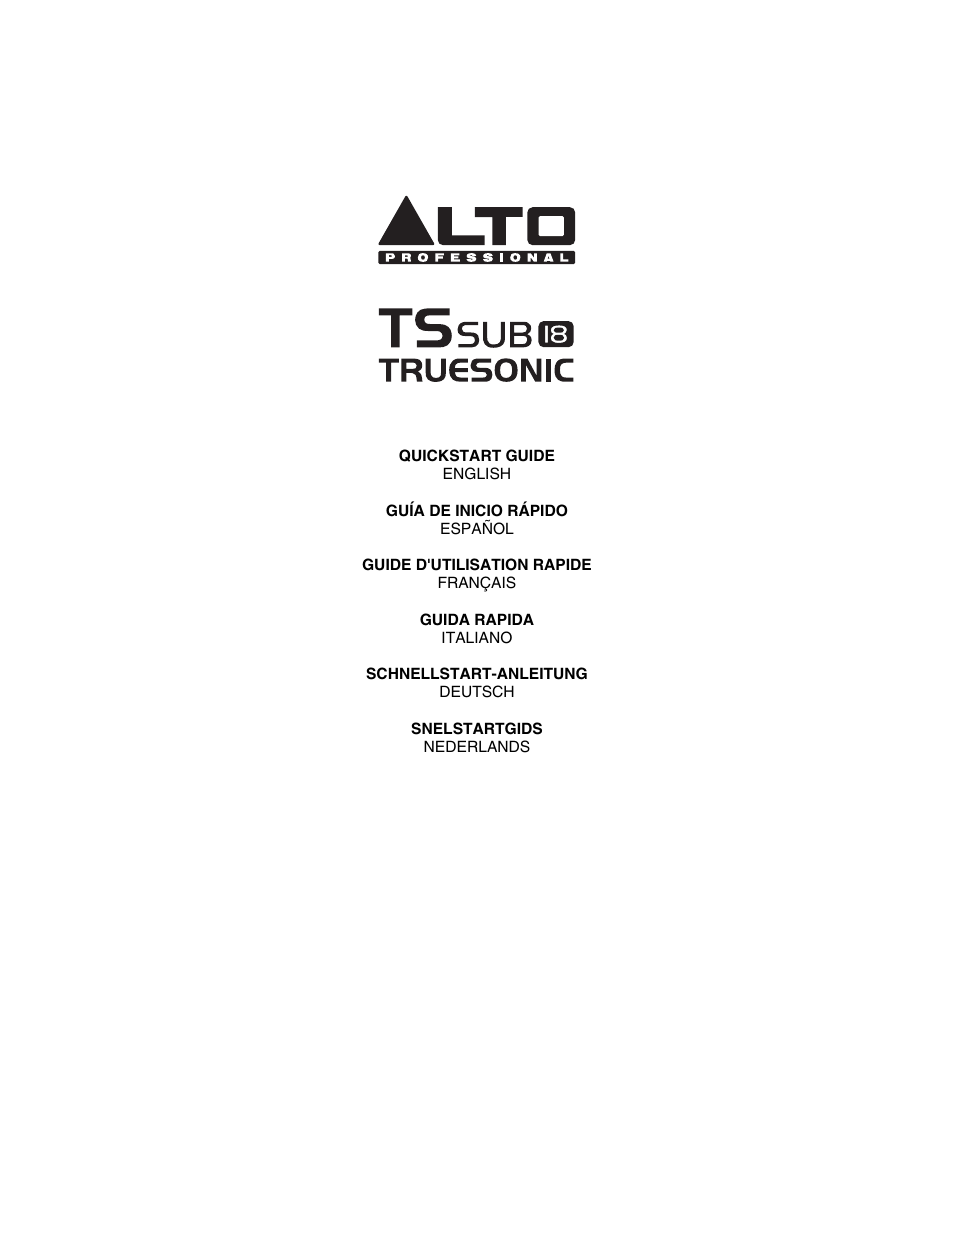 Alto Professional TSSUB18 User Manual | 8 pages | Also for: TSSUB15, TSSUB12